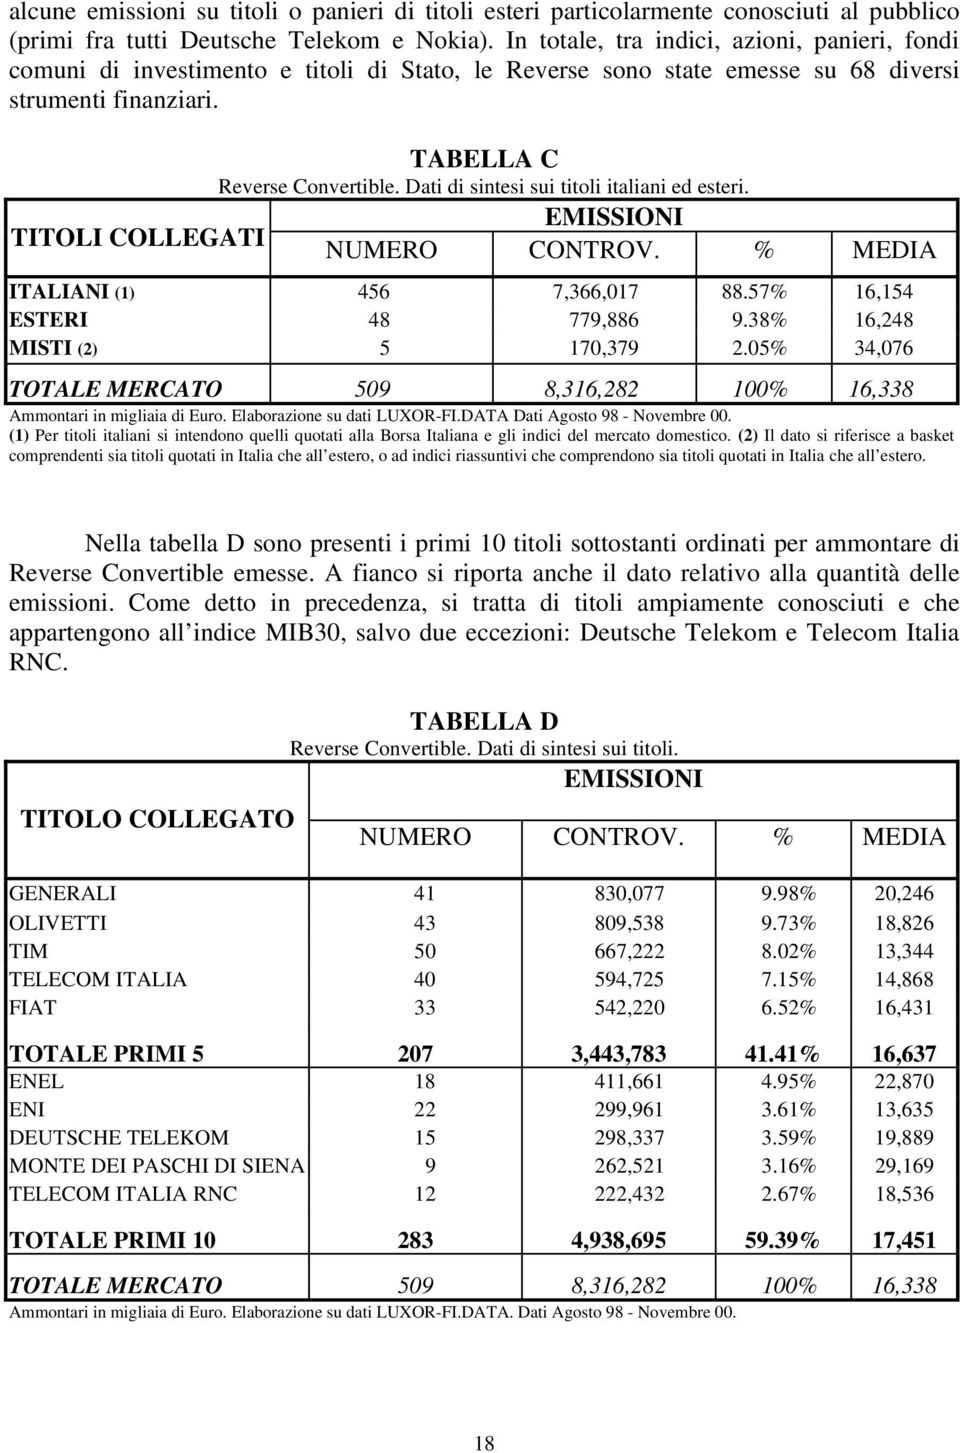 Dati di sintesi sui titoli italiani ed esteri. EMISSIONI TITOLI COLLEGATI NUMERO CONTROV. % MEDIA ITALIANI (1) 456 7,366,017 88.57% 16,154 ESTERI 48 779,886 9.38% 16,248 MISTI (2) 5 170,379 2.